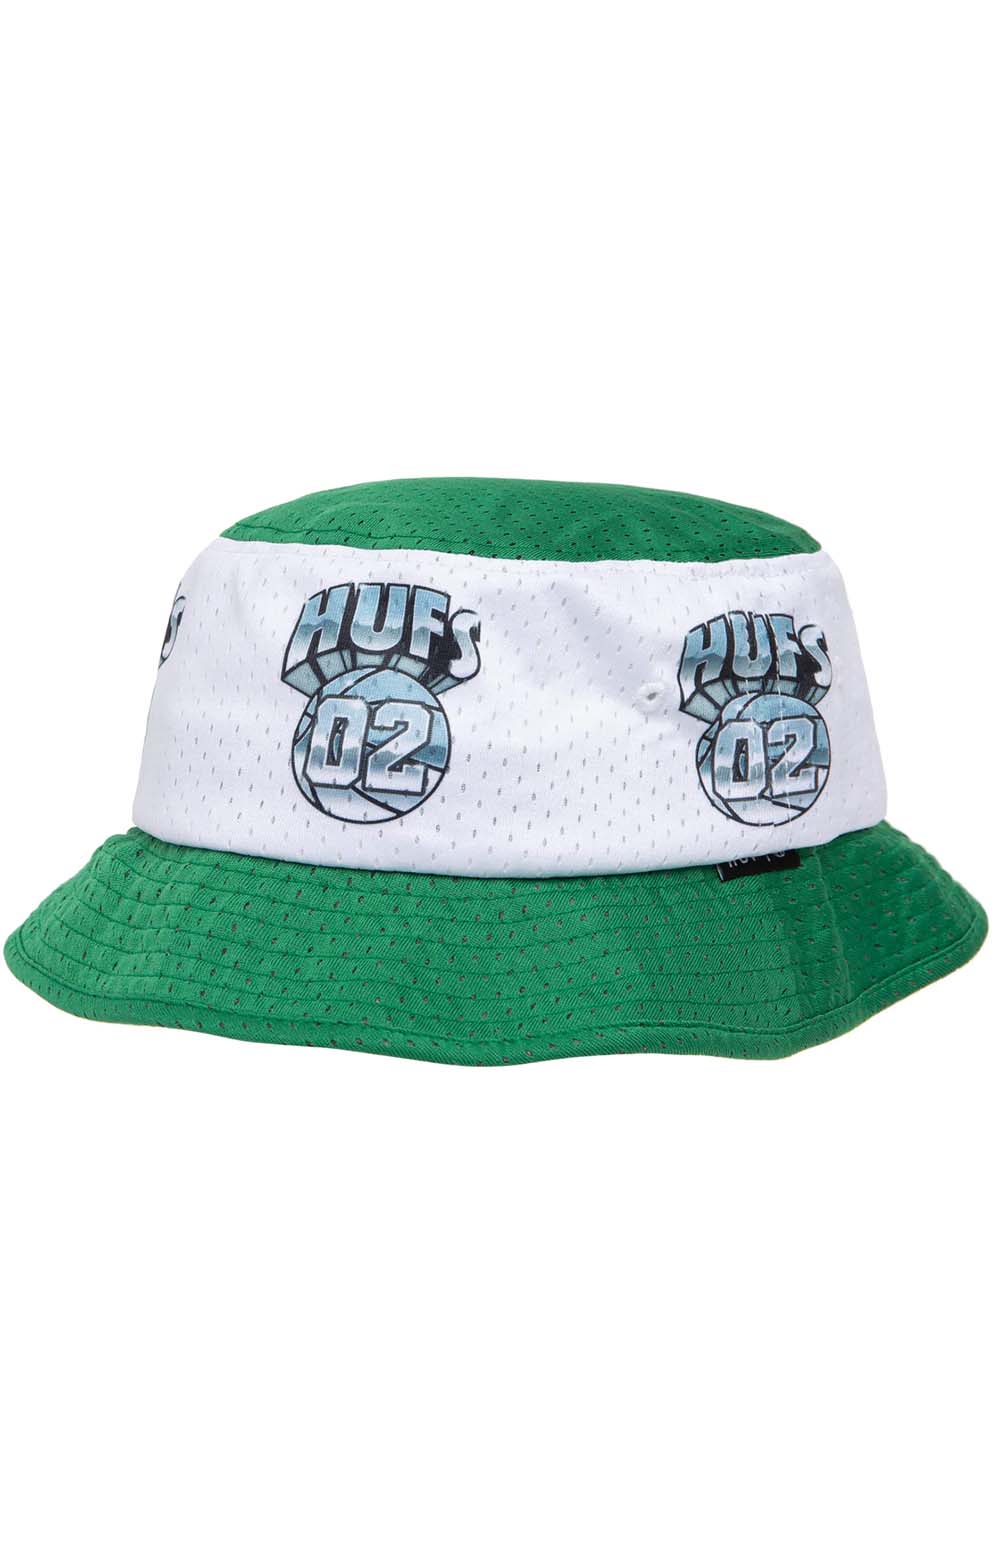 Hufs Basketball Mesh Bucket Hat - Green